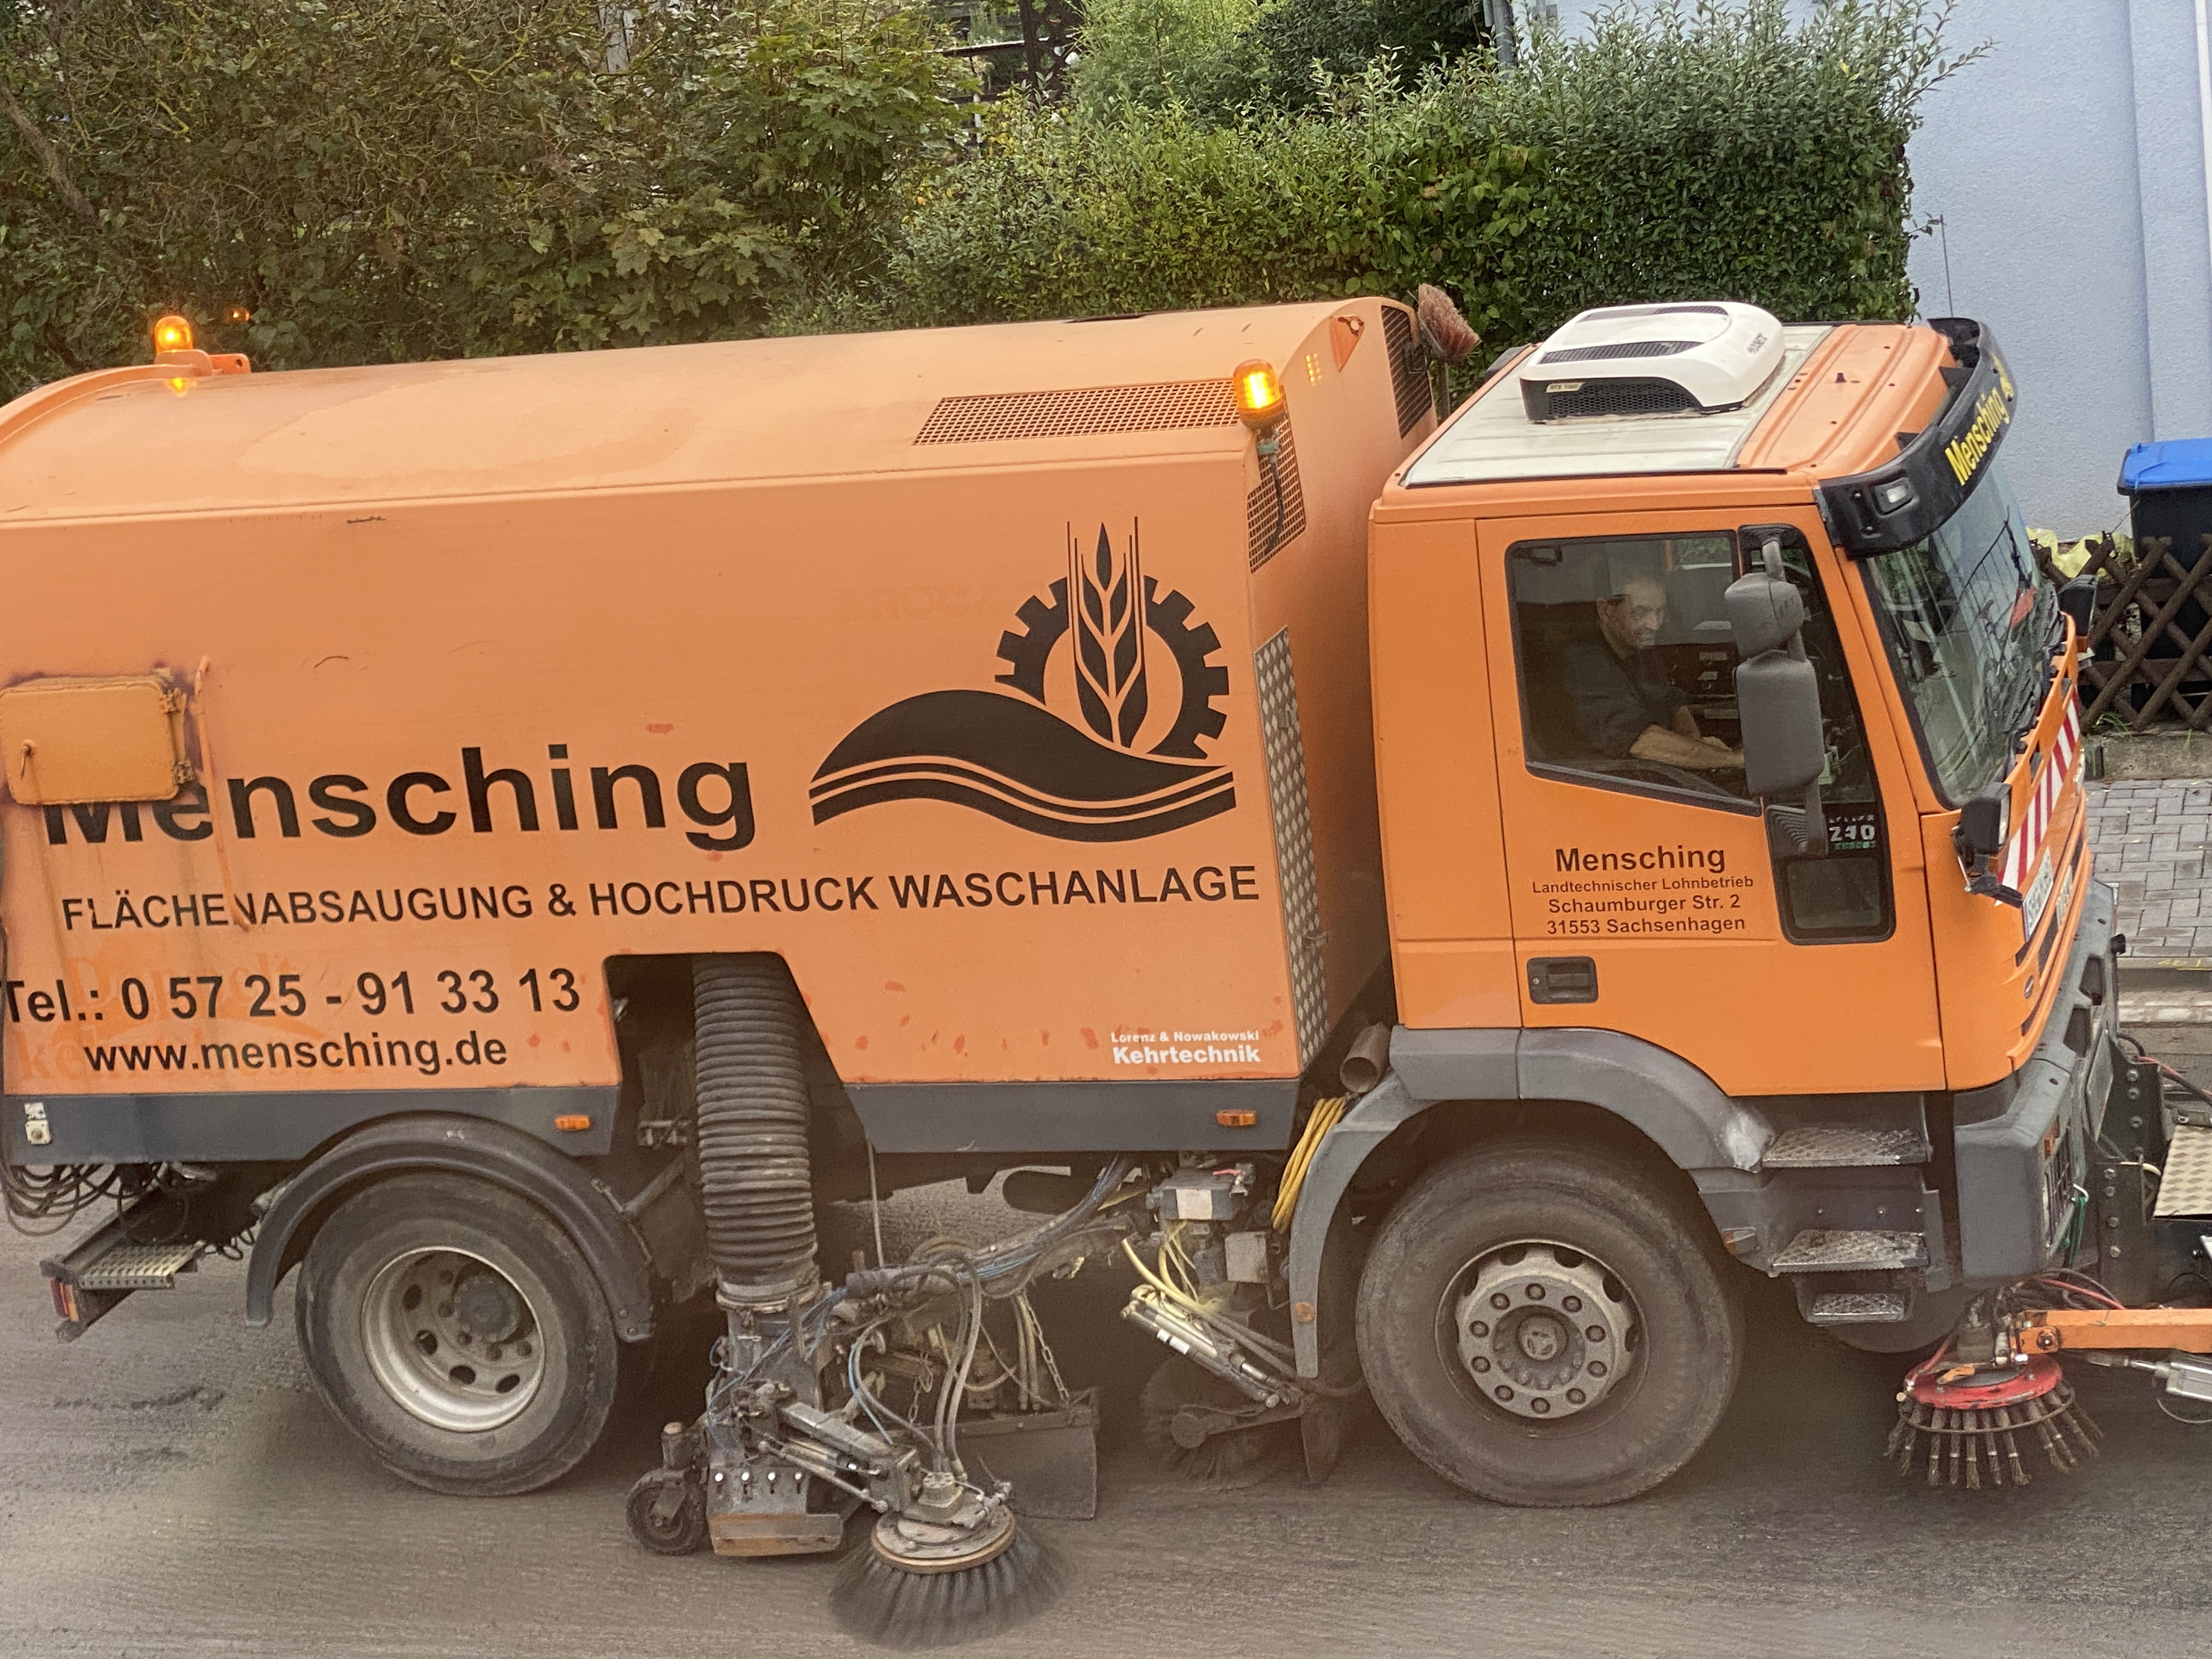 Bild 1 Mensching-GmbH & Co. KG in Sachsenhagen